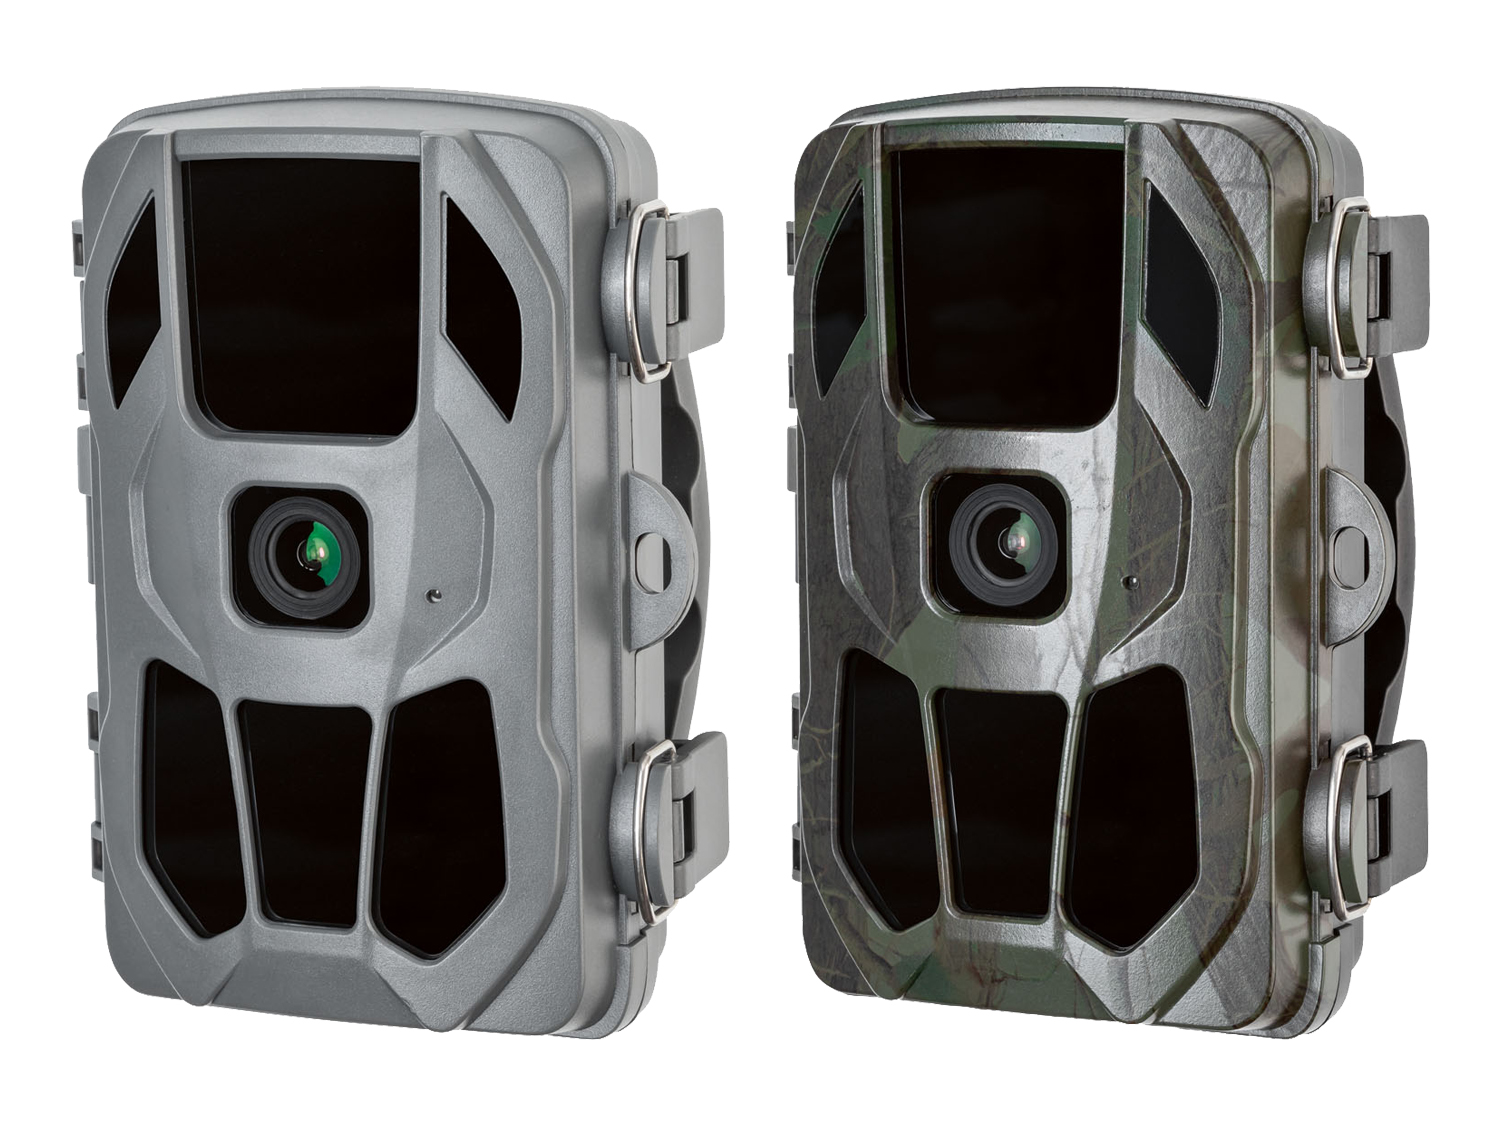 Wild-/Überwachungskamera mit Infrarot-LEDs